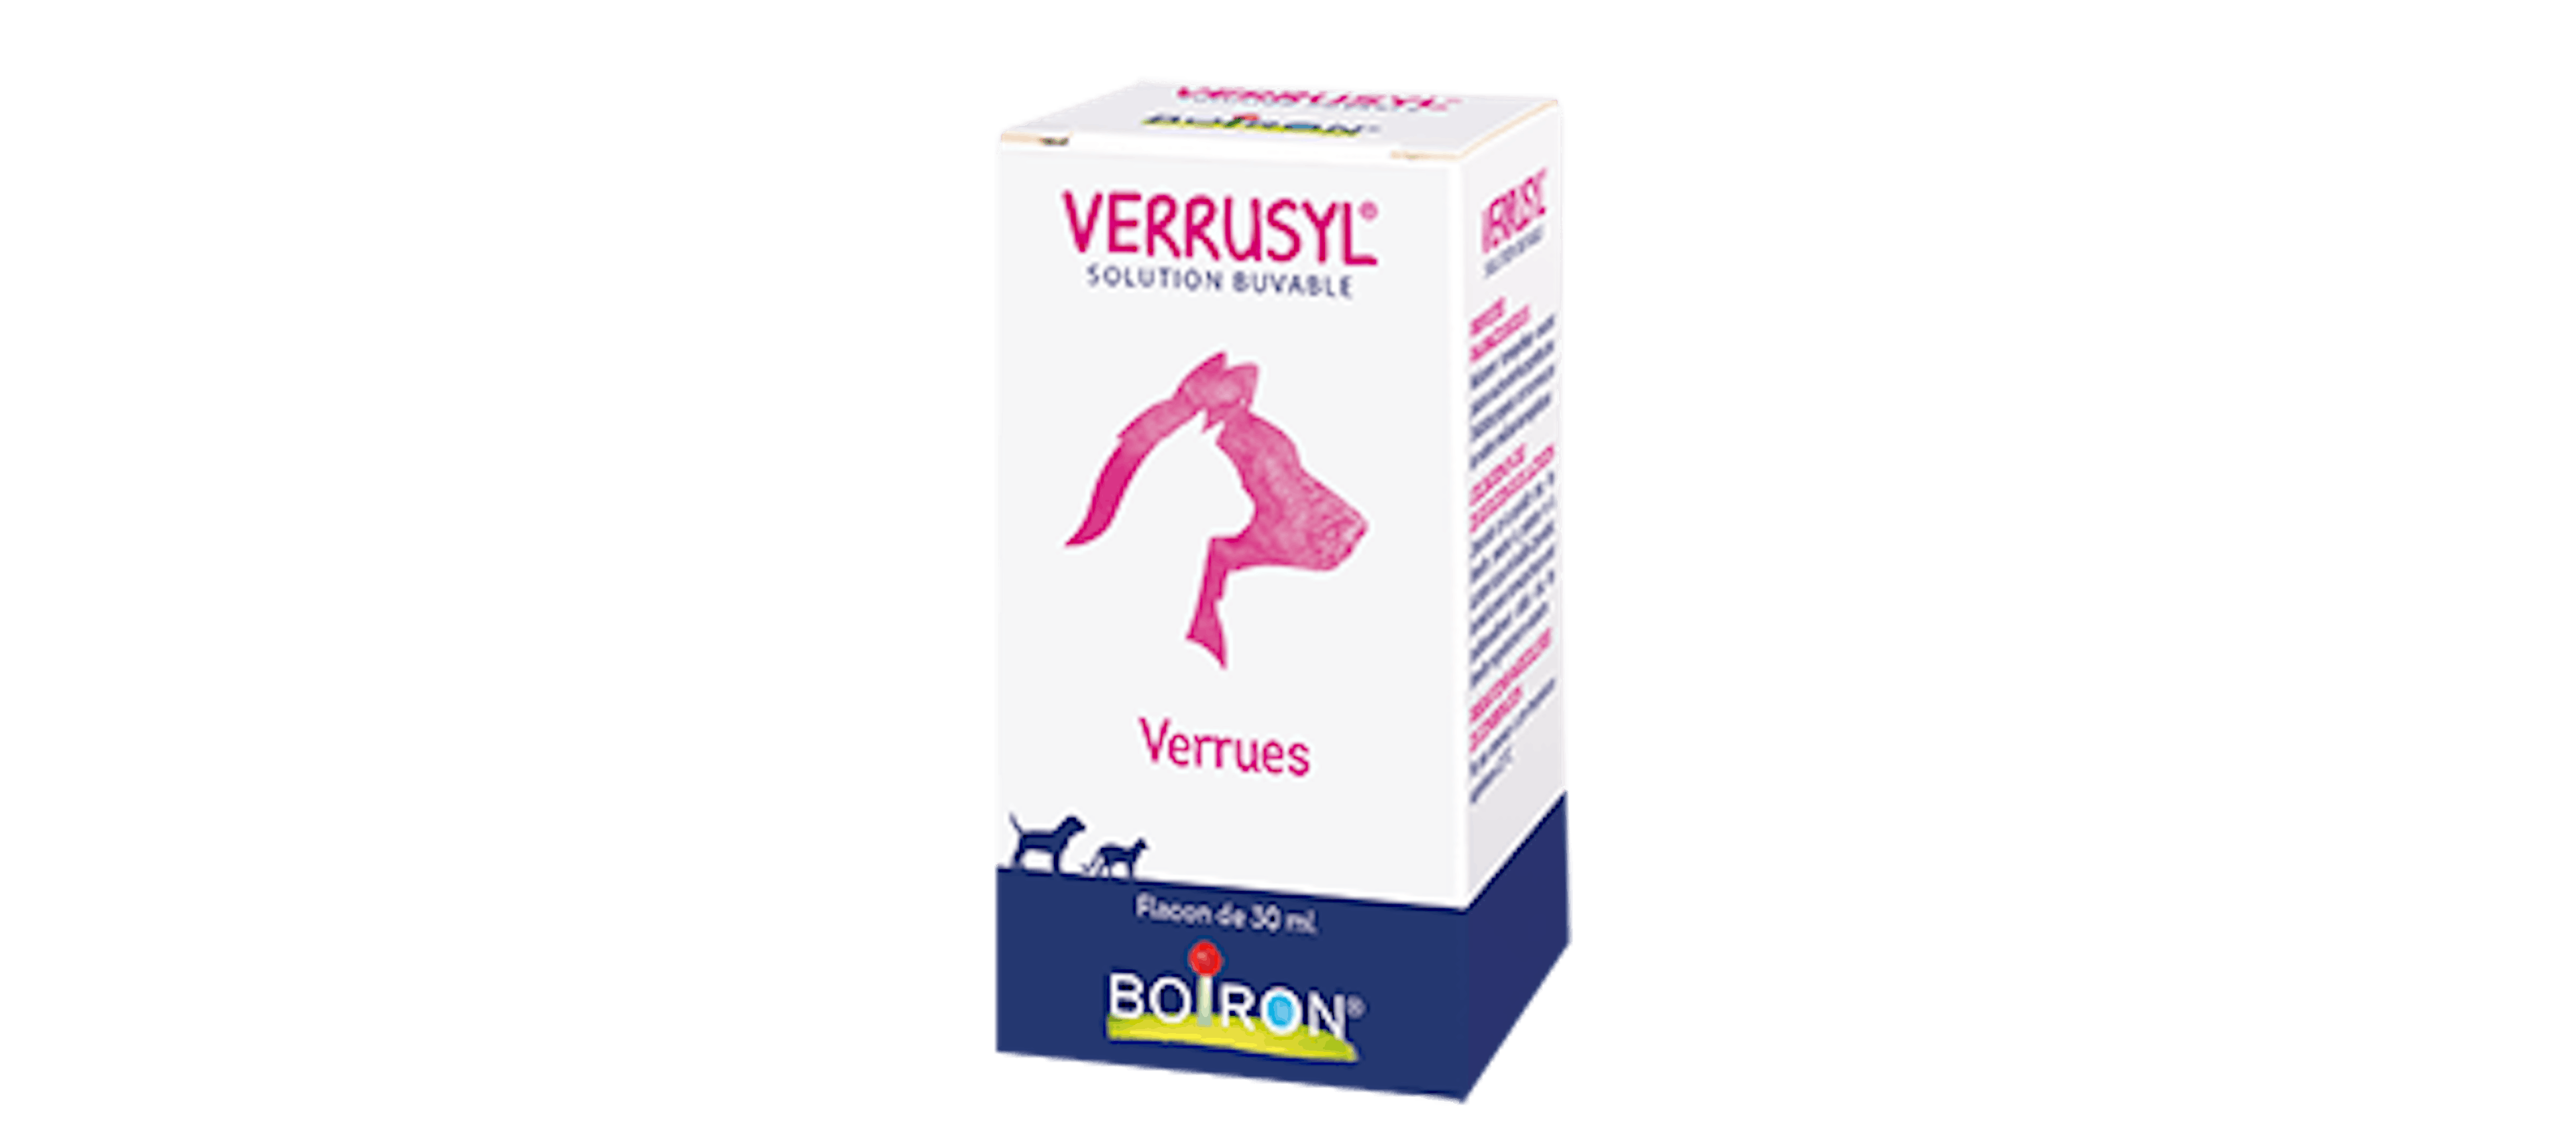 Verrusyl Boiron